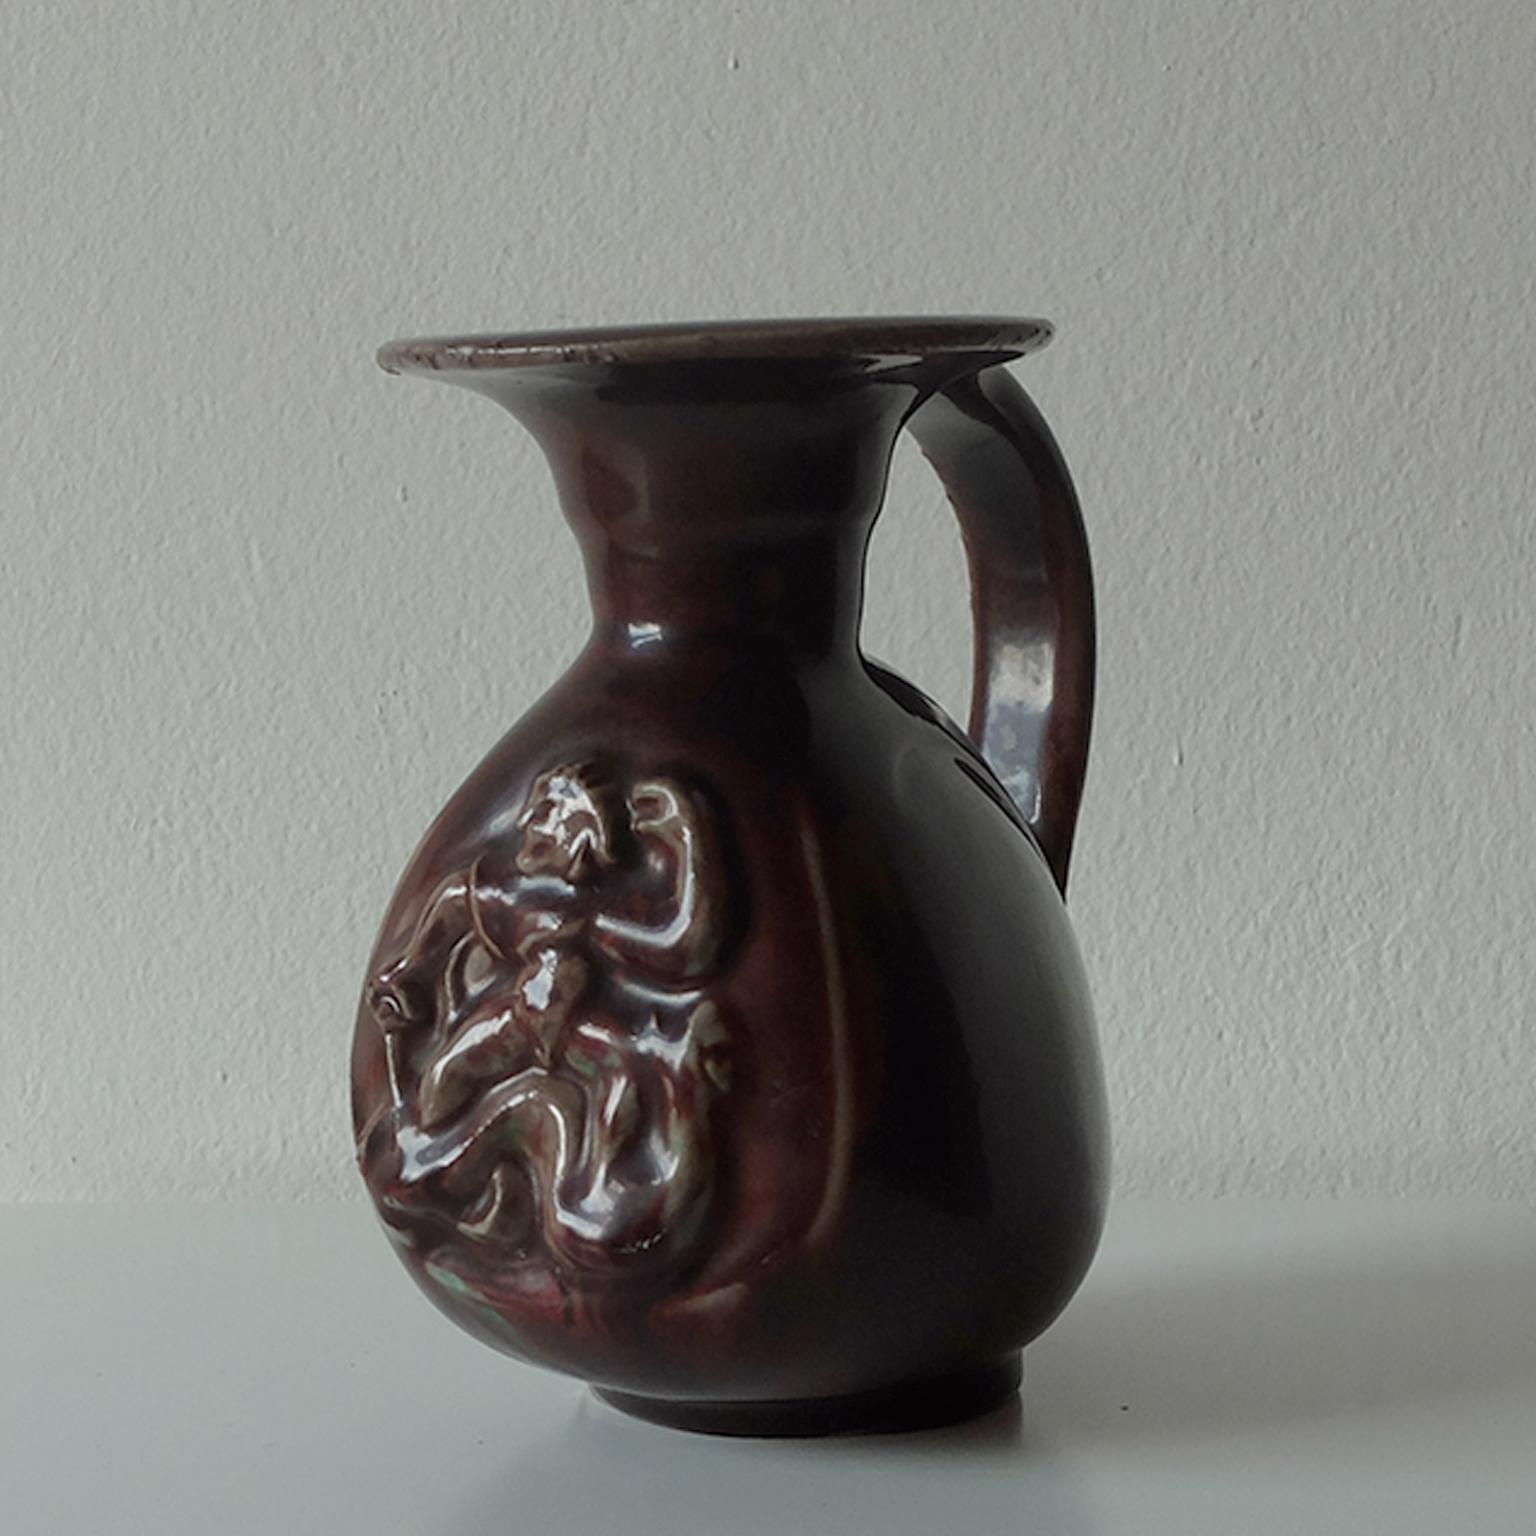 Bode Willumsen für Royal Copenhagen, glasierter Keramikkrug, 1940er Jahre.



Bitte beachten Sie: Die Option 